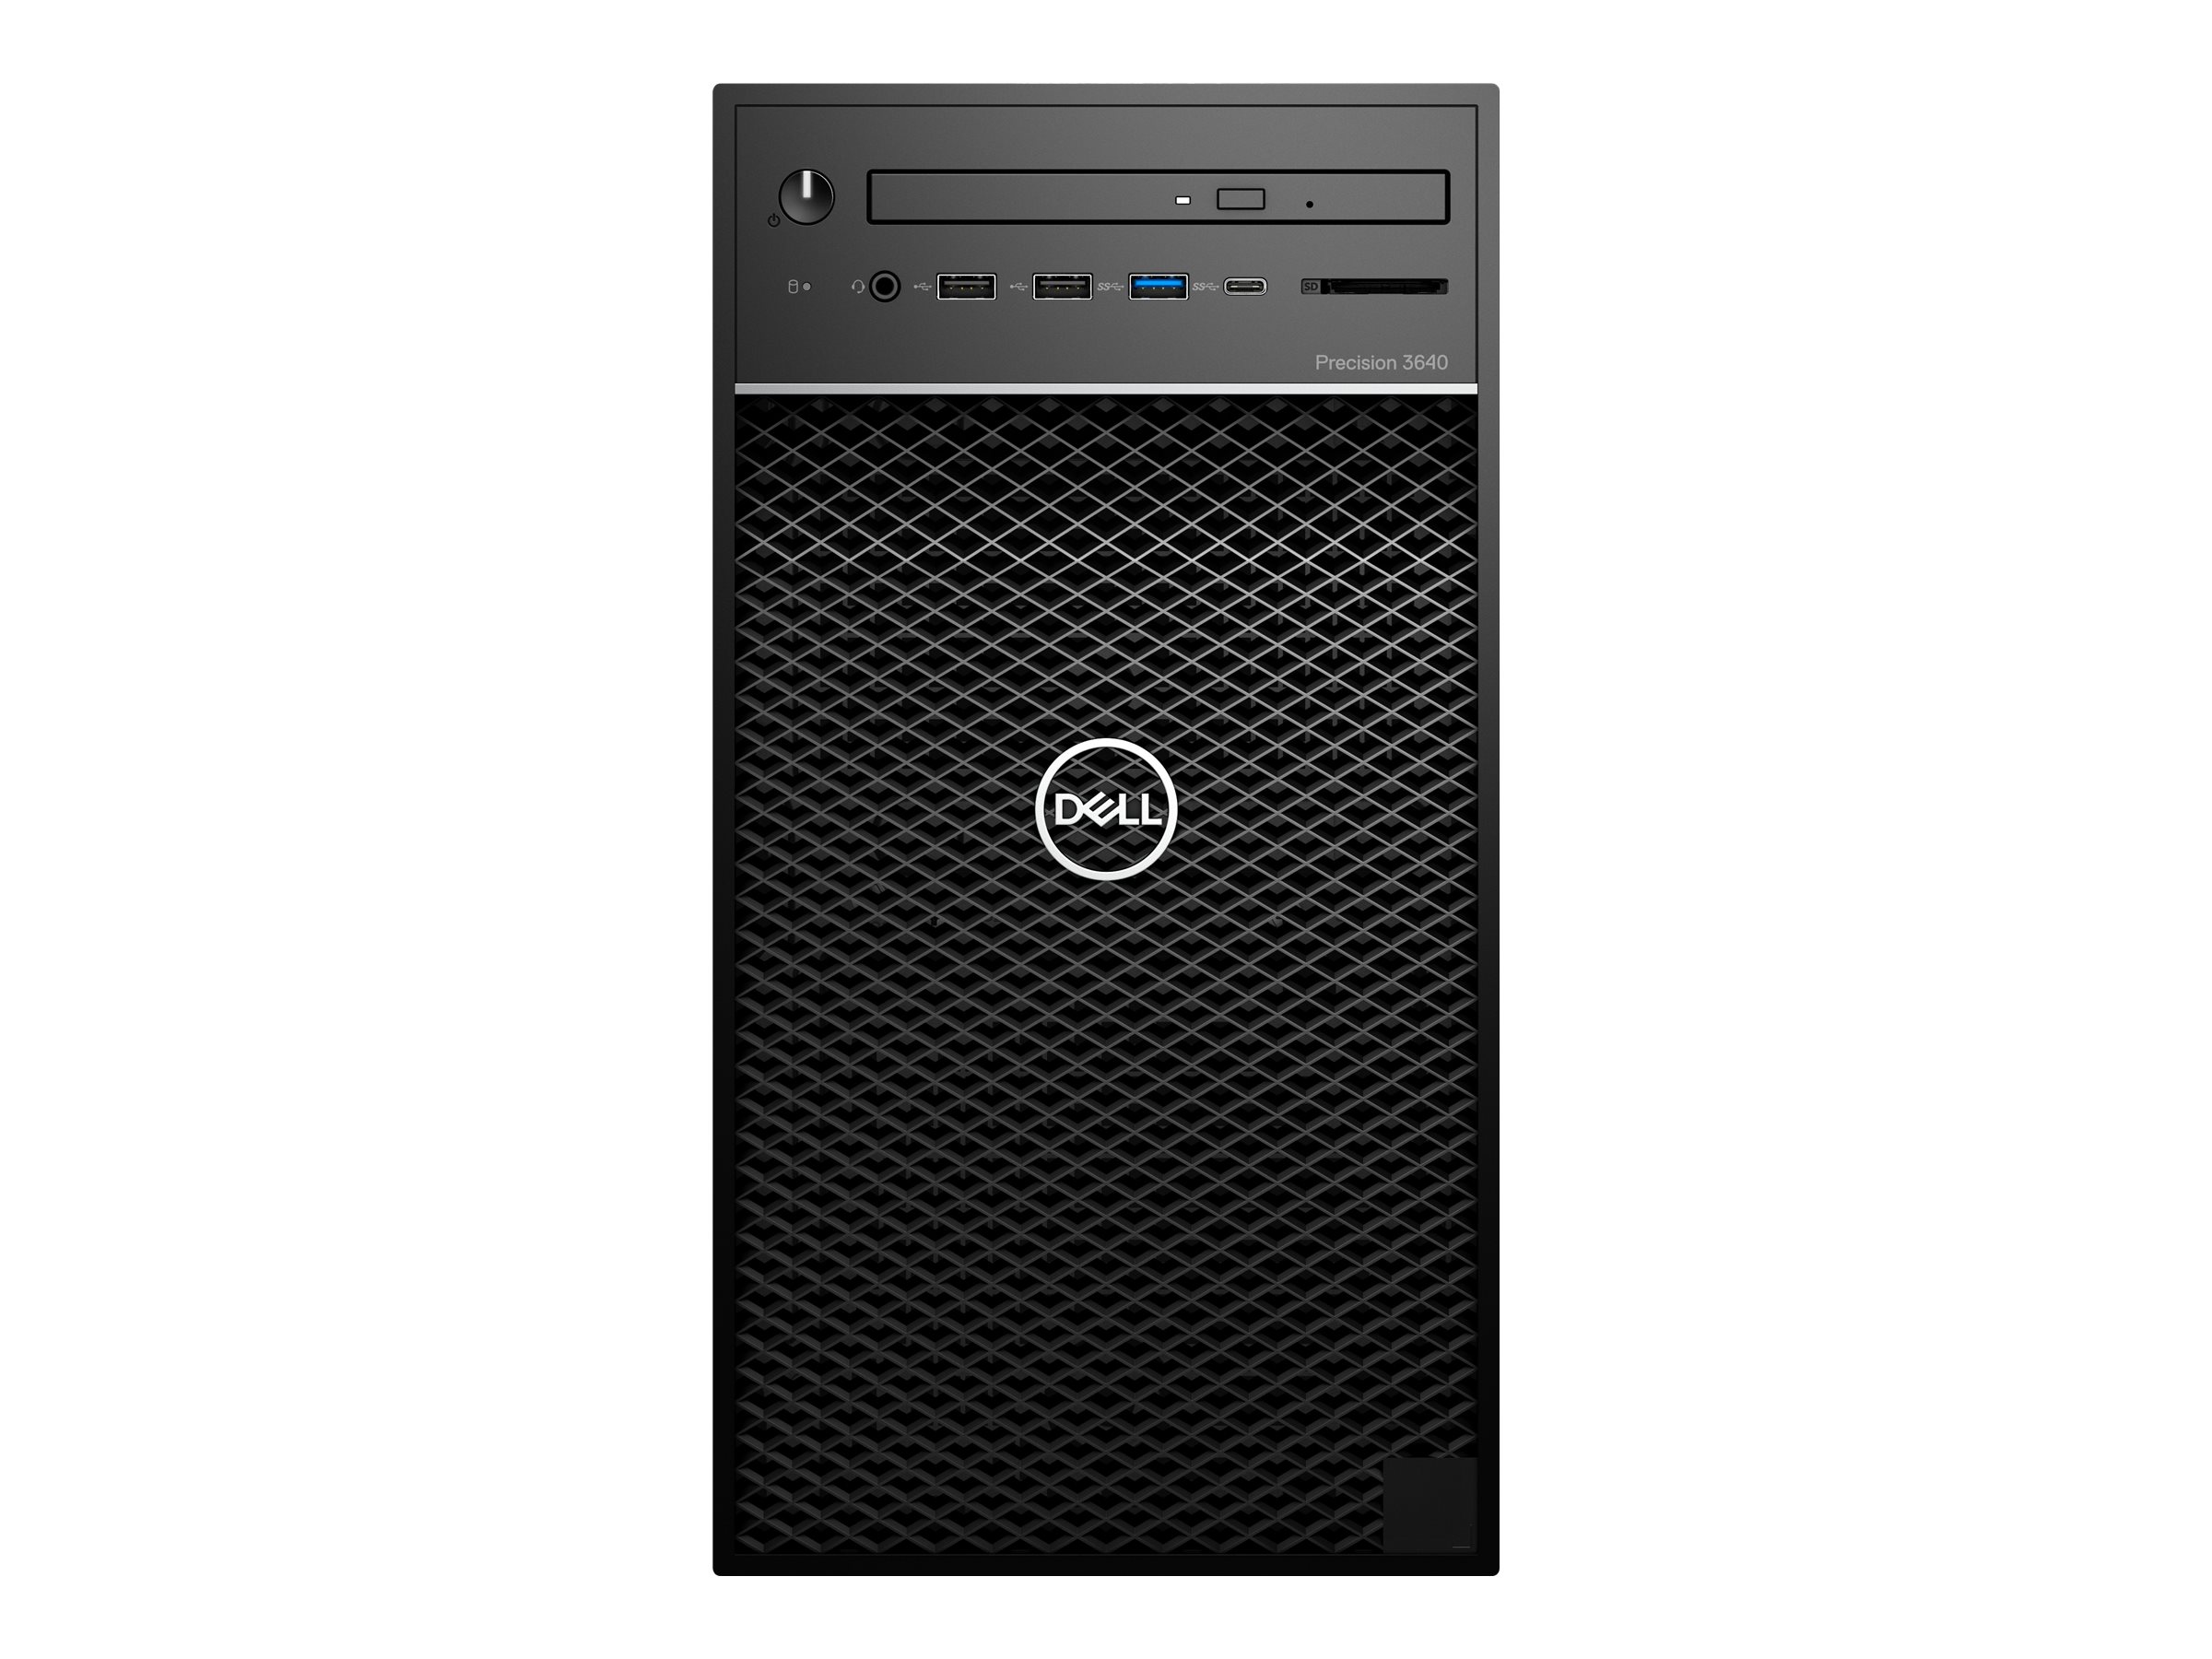 Dell Precision 3640 Tower - MT - 1 x Core i7 10700 / 2.9 GHz - vPro - RAM 32 Go - SSD 512 Go - graveur de DVD - Quadro P2200 - Gigabit Ethernet - Win 10 Pro 64 bits - moniteur : aucun - noir - BTP - avec 1 Year Basic Onsite (CH, IE, UK - 3 Years) - K82D3 - Ordinateurs de bureau